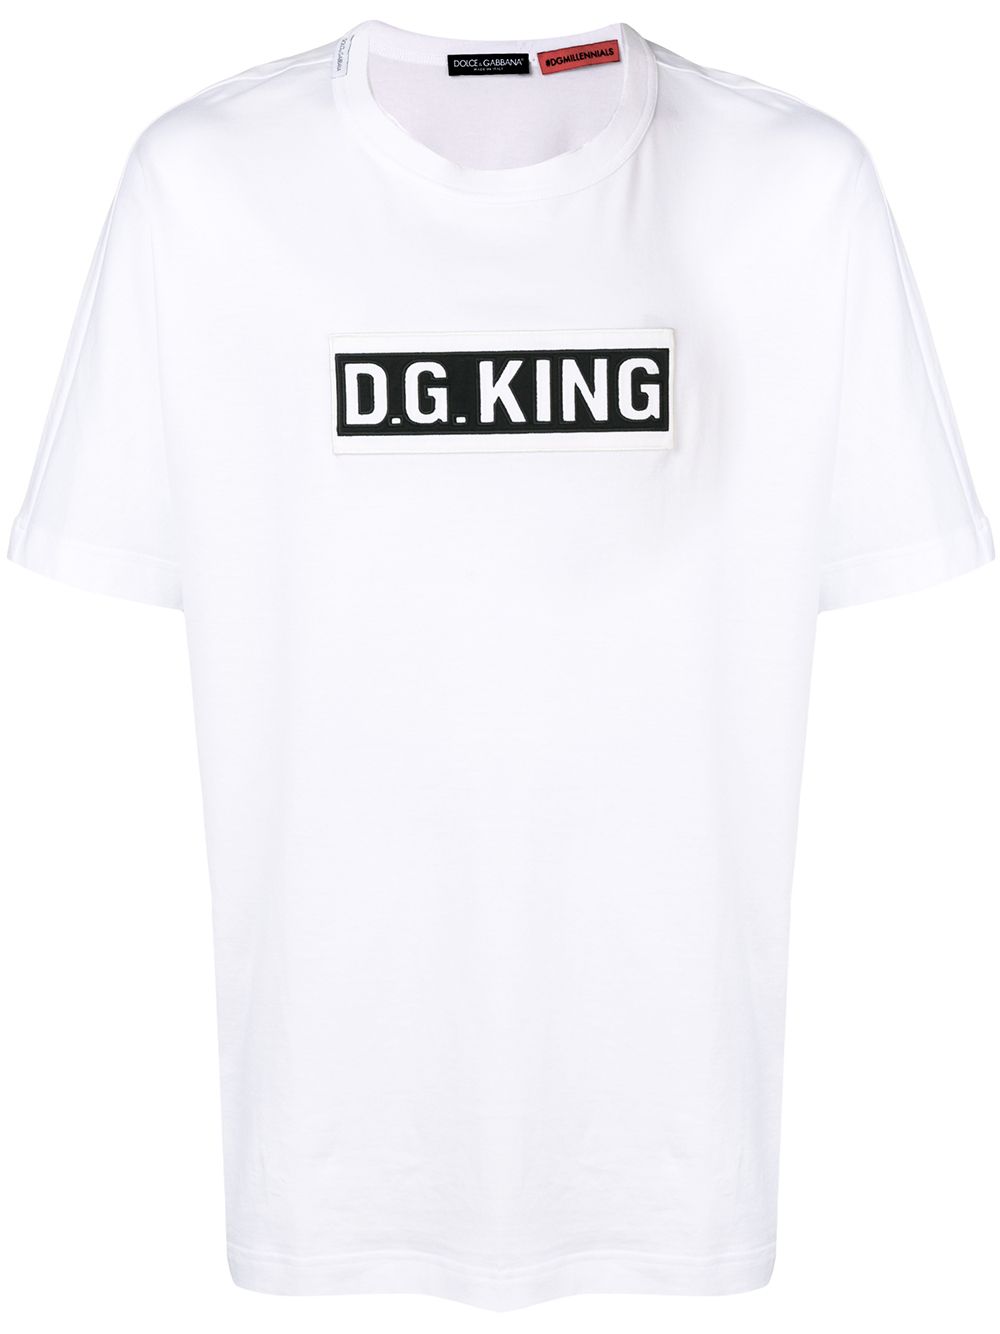 фото Dolce & Gabbana футболка с нашивкой D.G. King